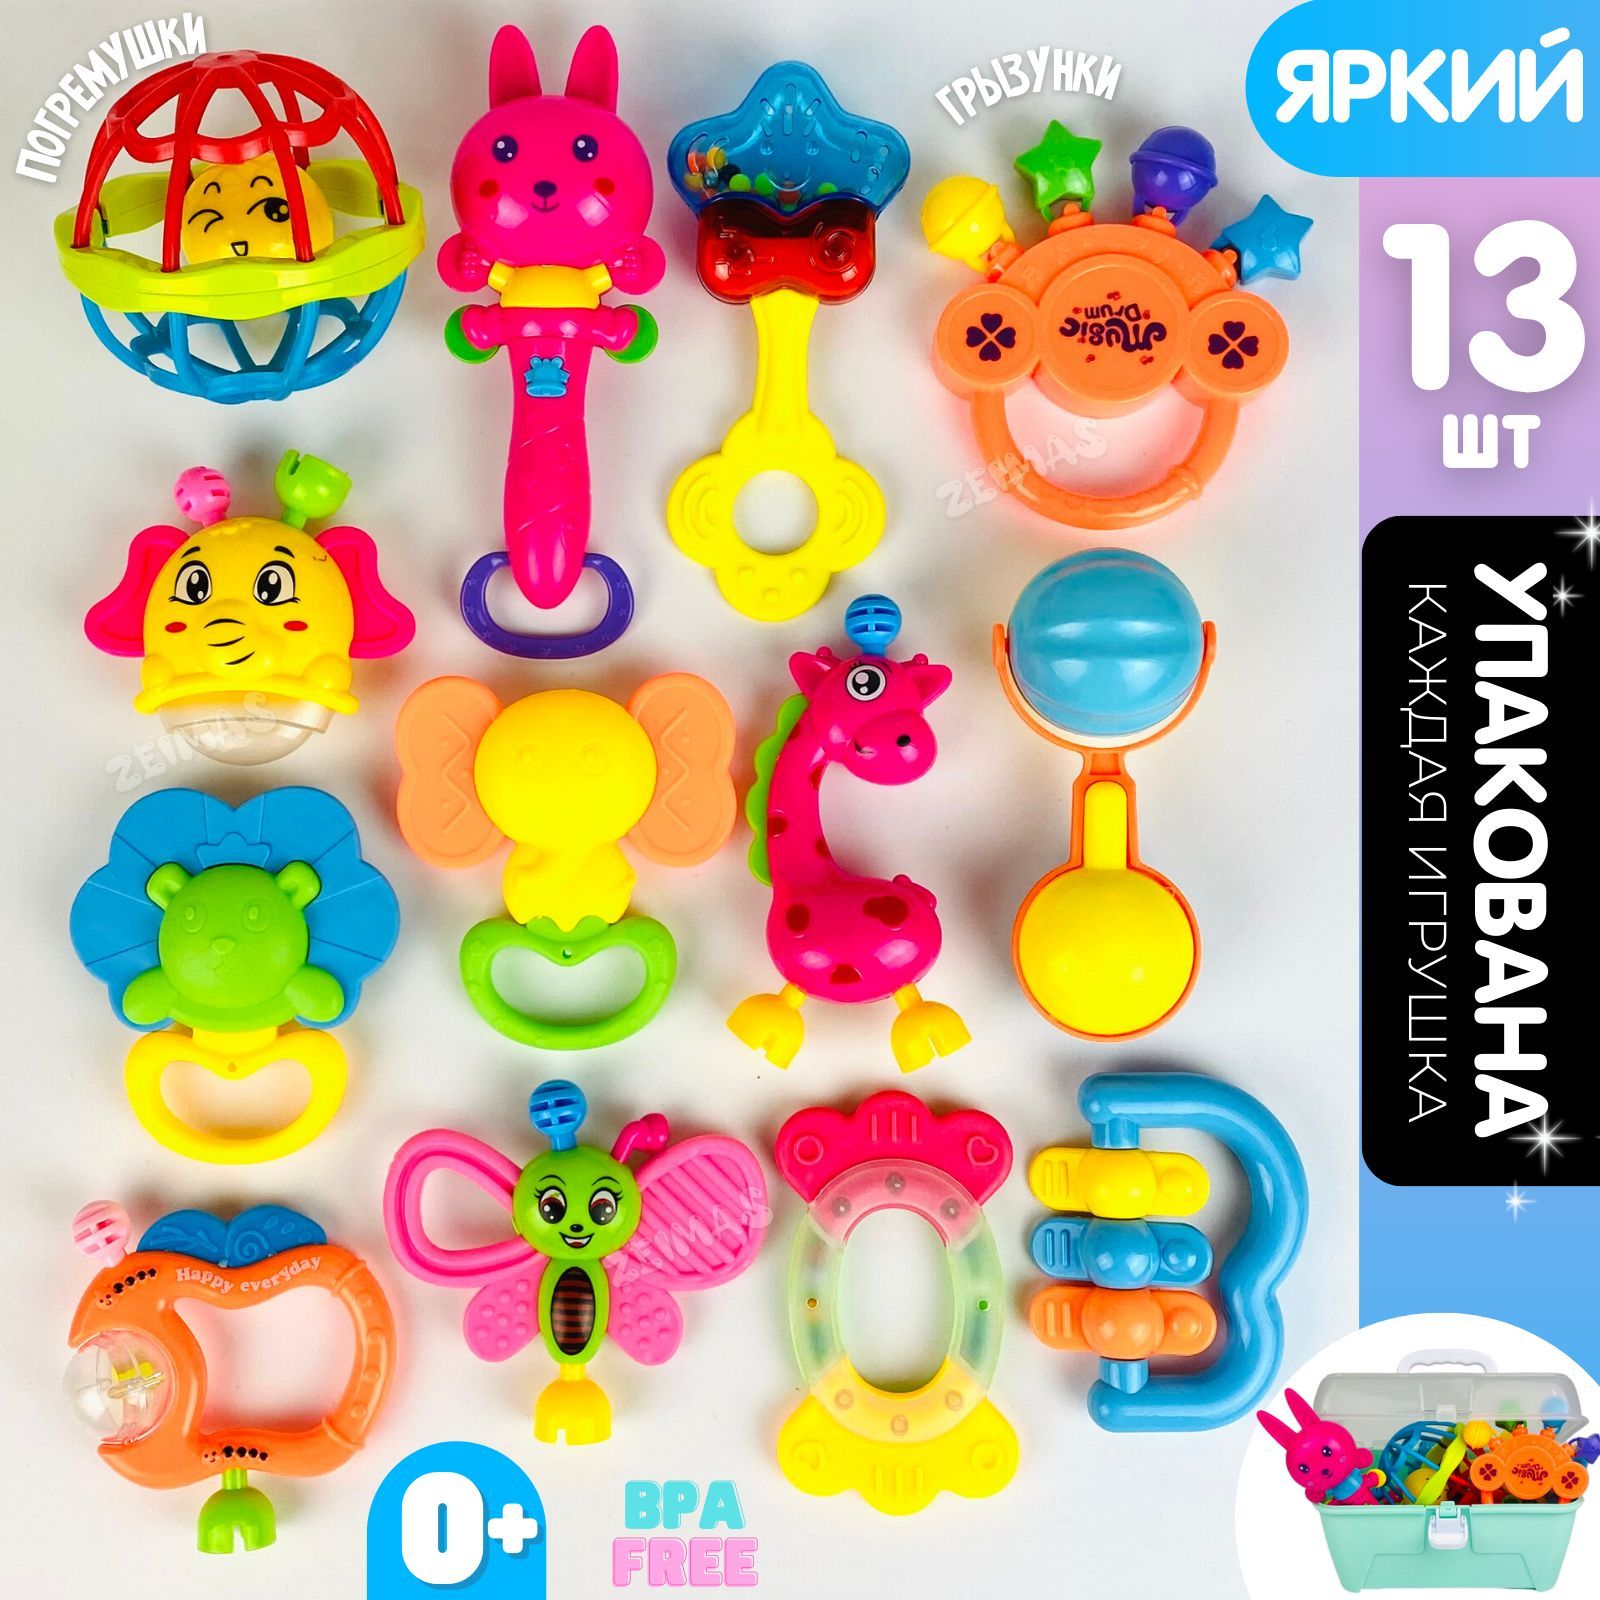 Топ российских производителей игрушек для детей